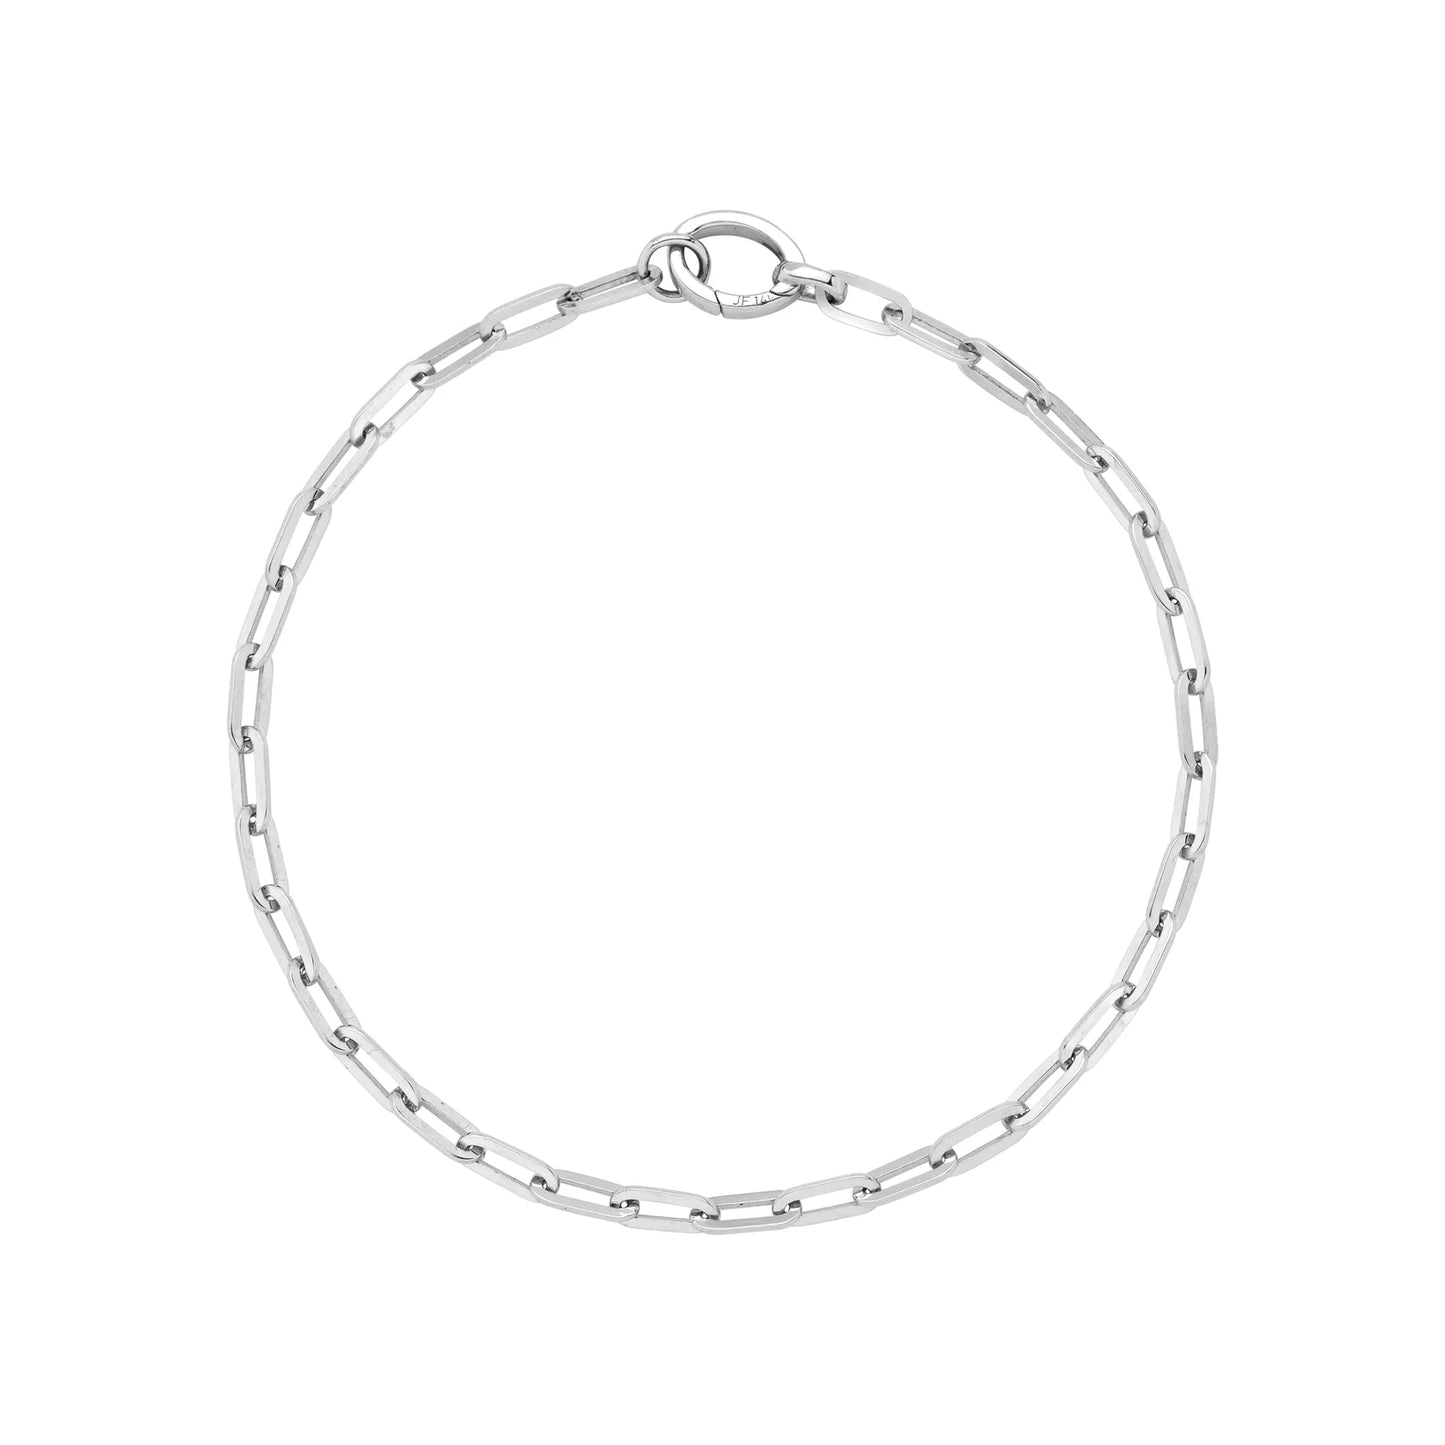 Jennifer Fisher - 14k Small Long Link Chain Bracelet - White Gold